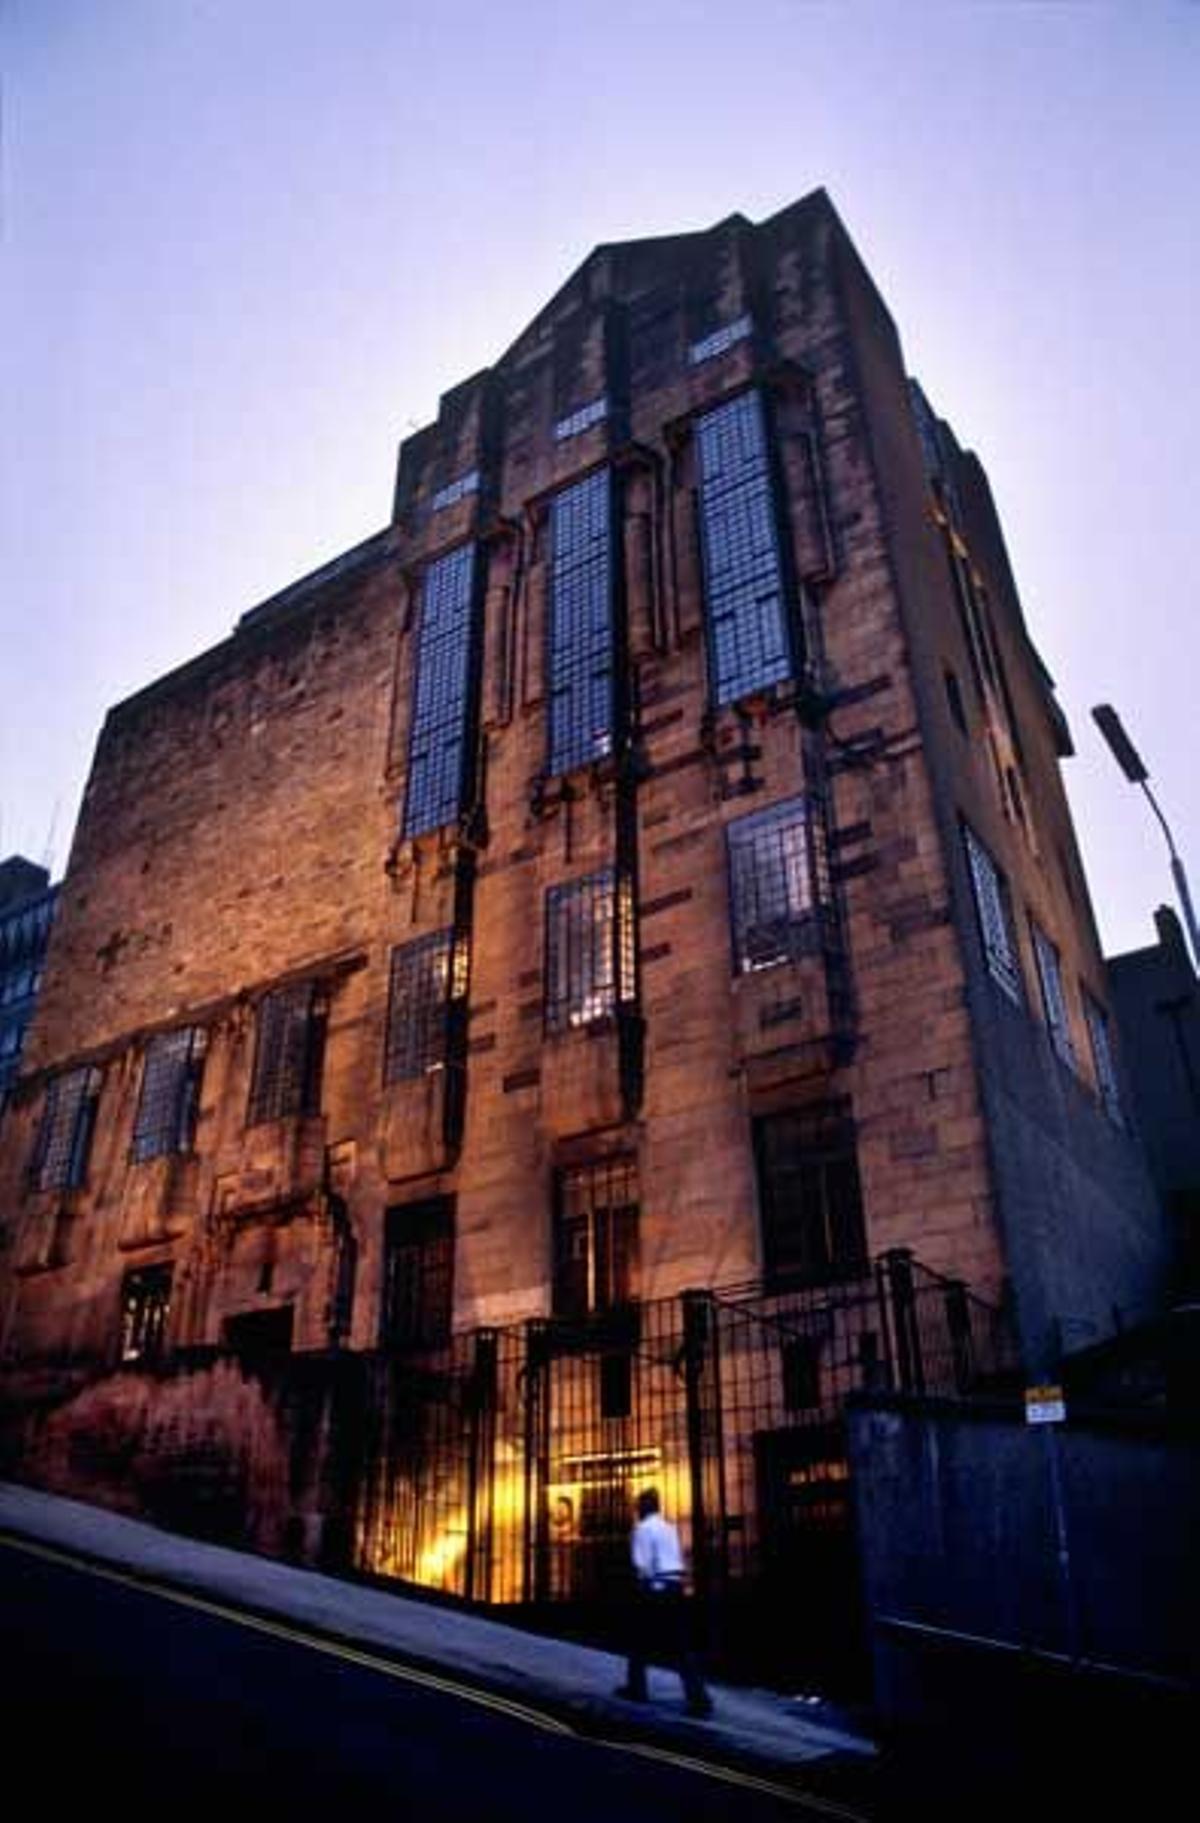 Fachada exterior en piedra en la Escuela de Arte de Glasgow.